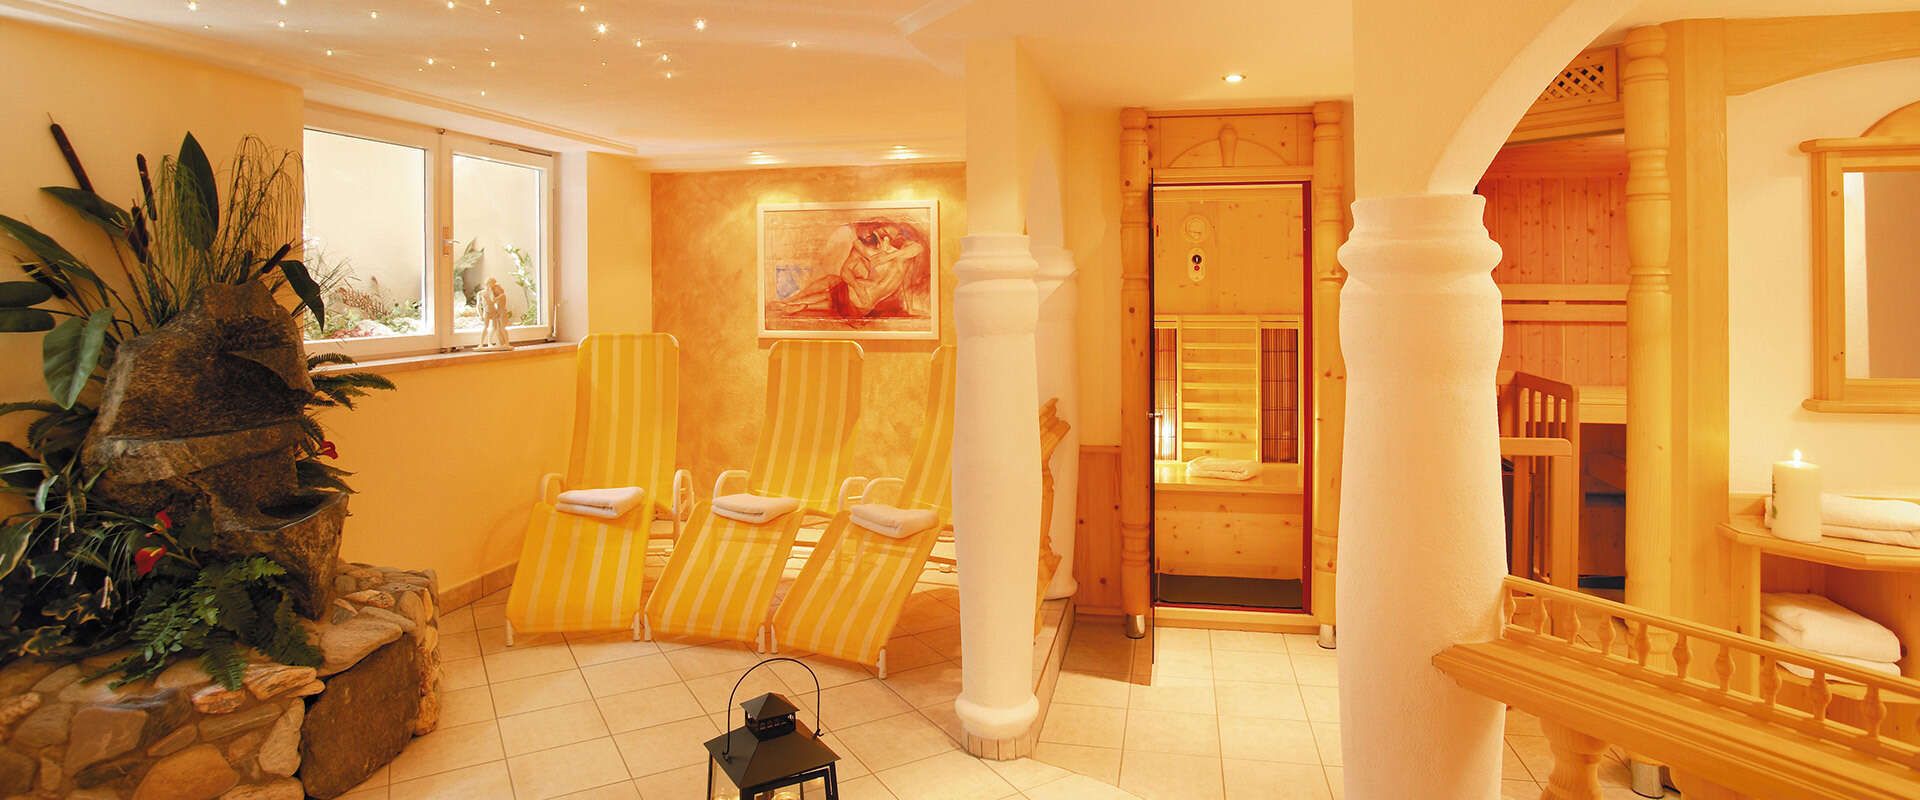 Saunabereich im Hotel Alpenherz in Gerlos im Zillertal